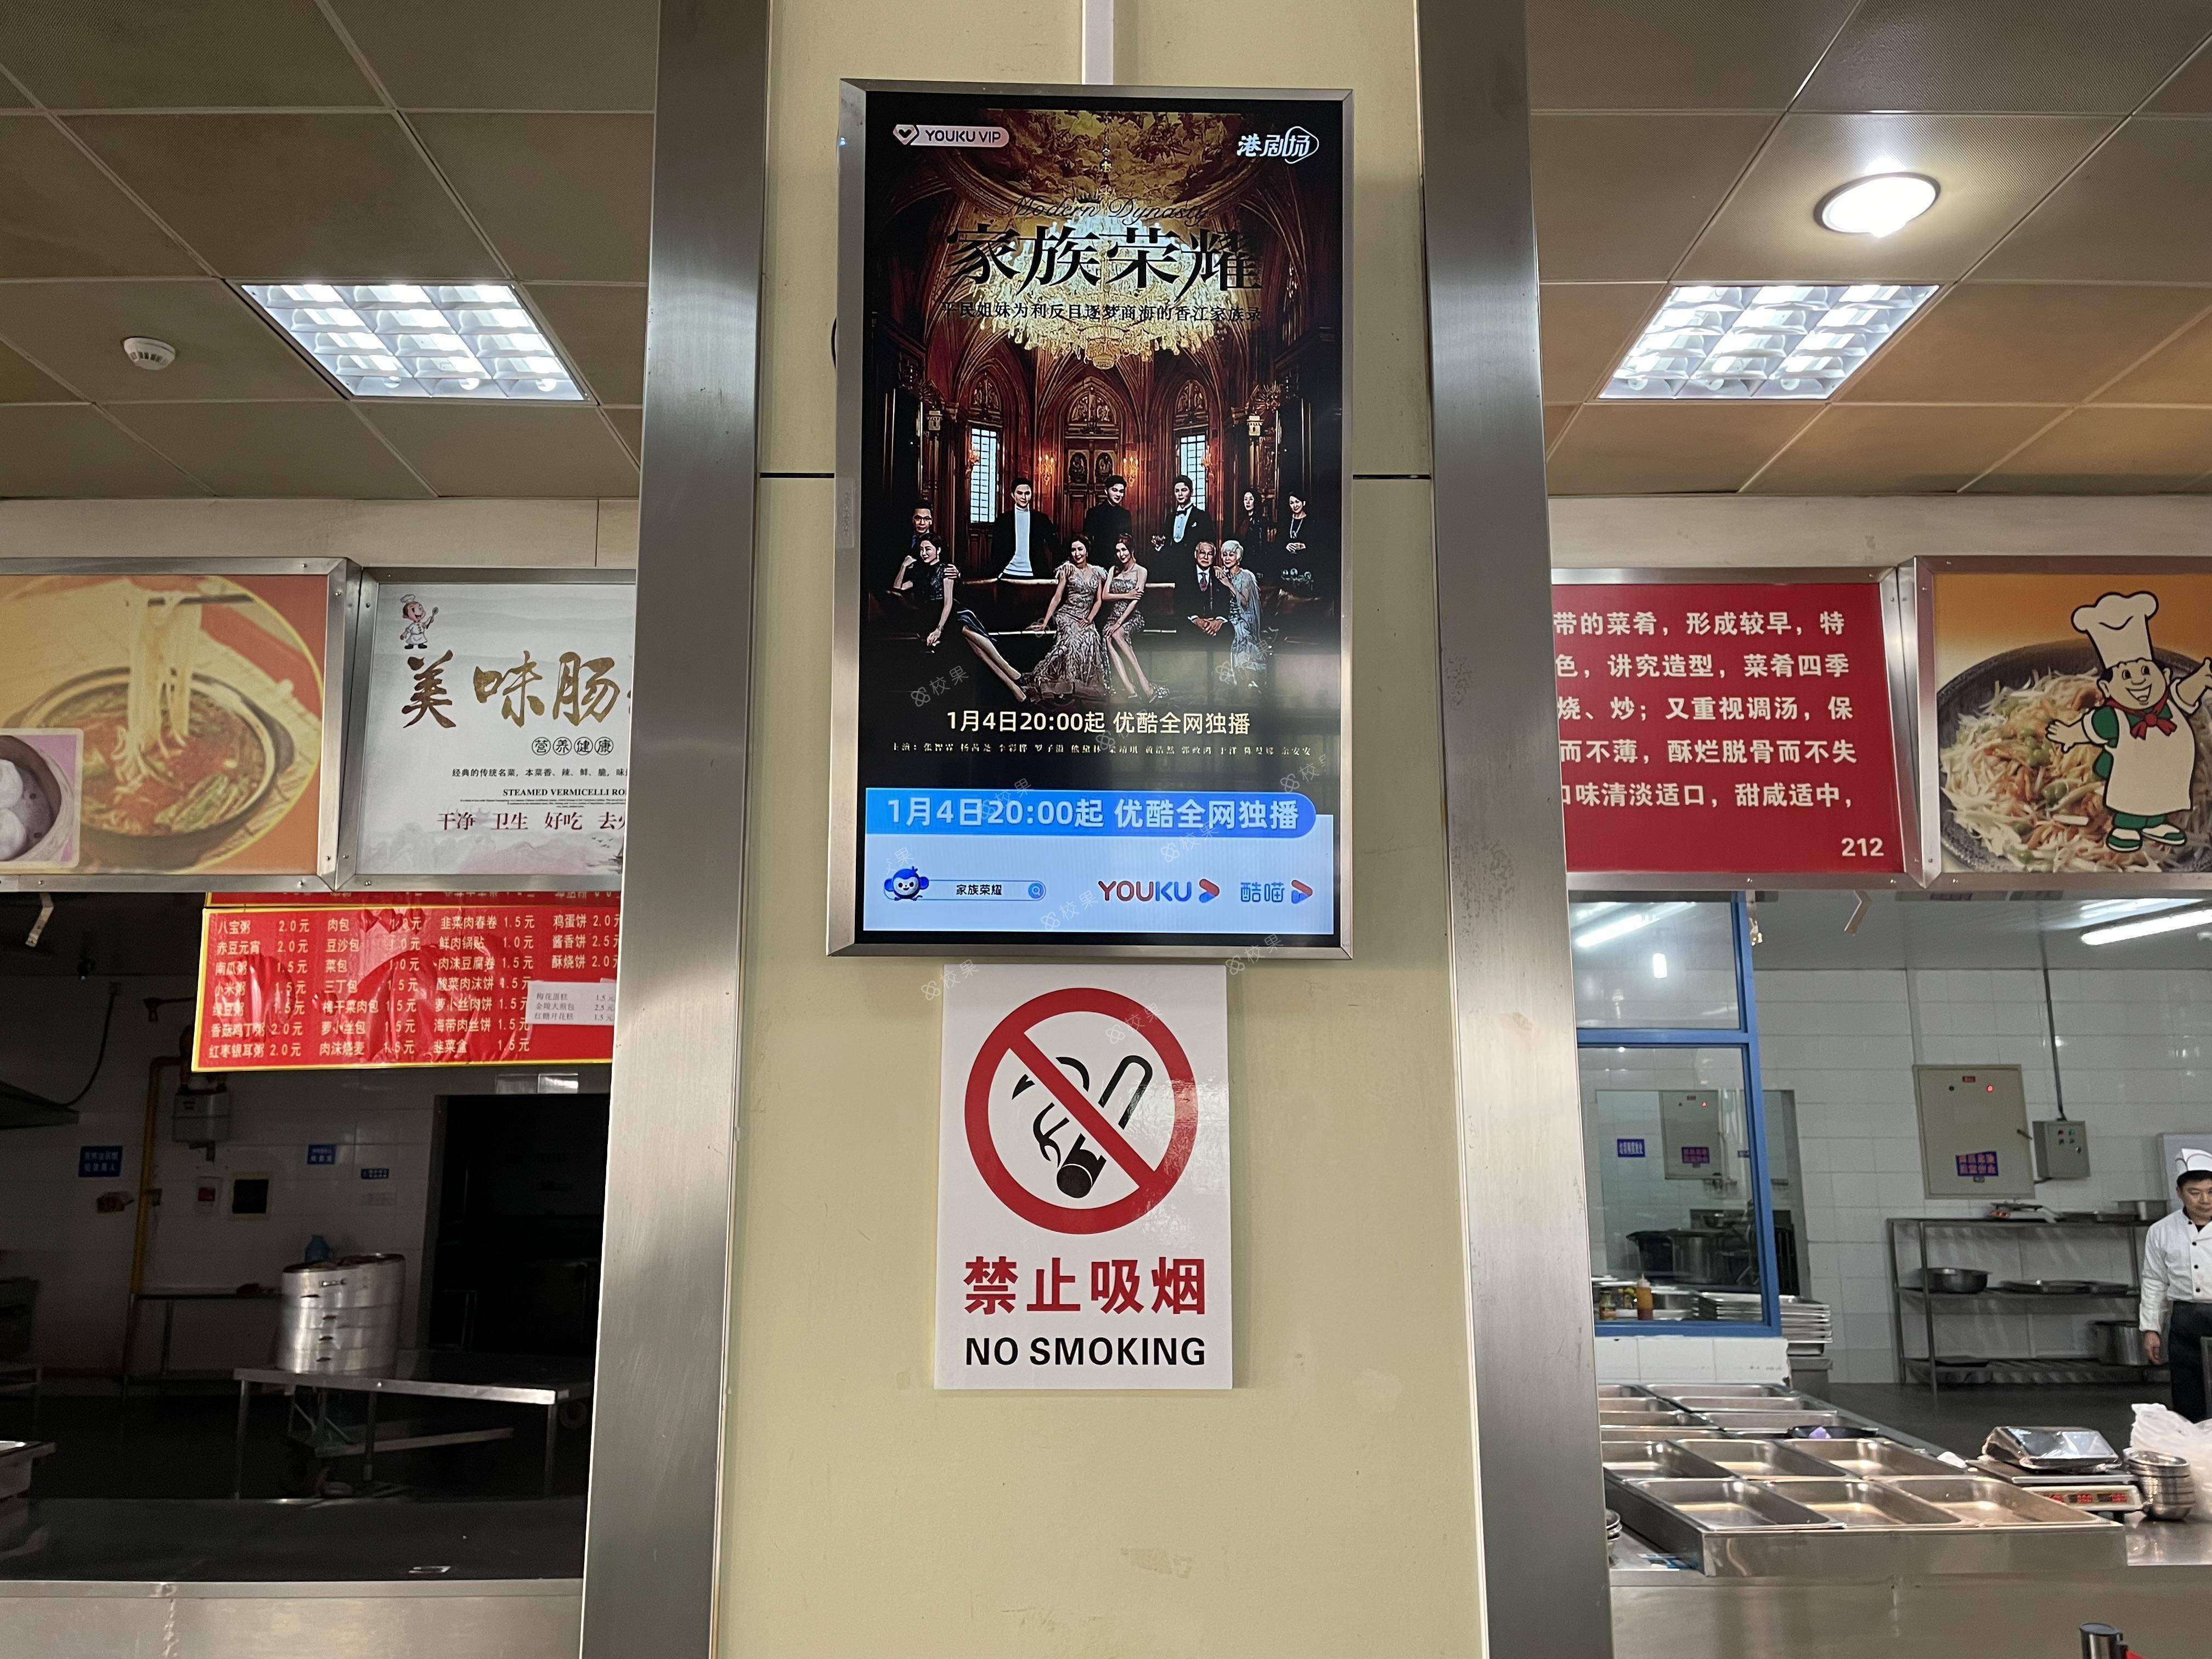 液晶屏广告 北京师范大学